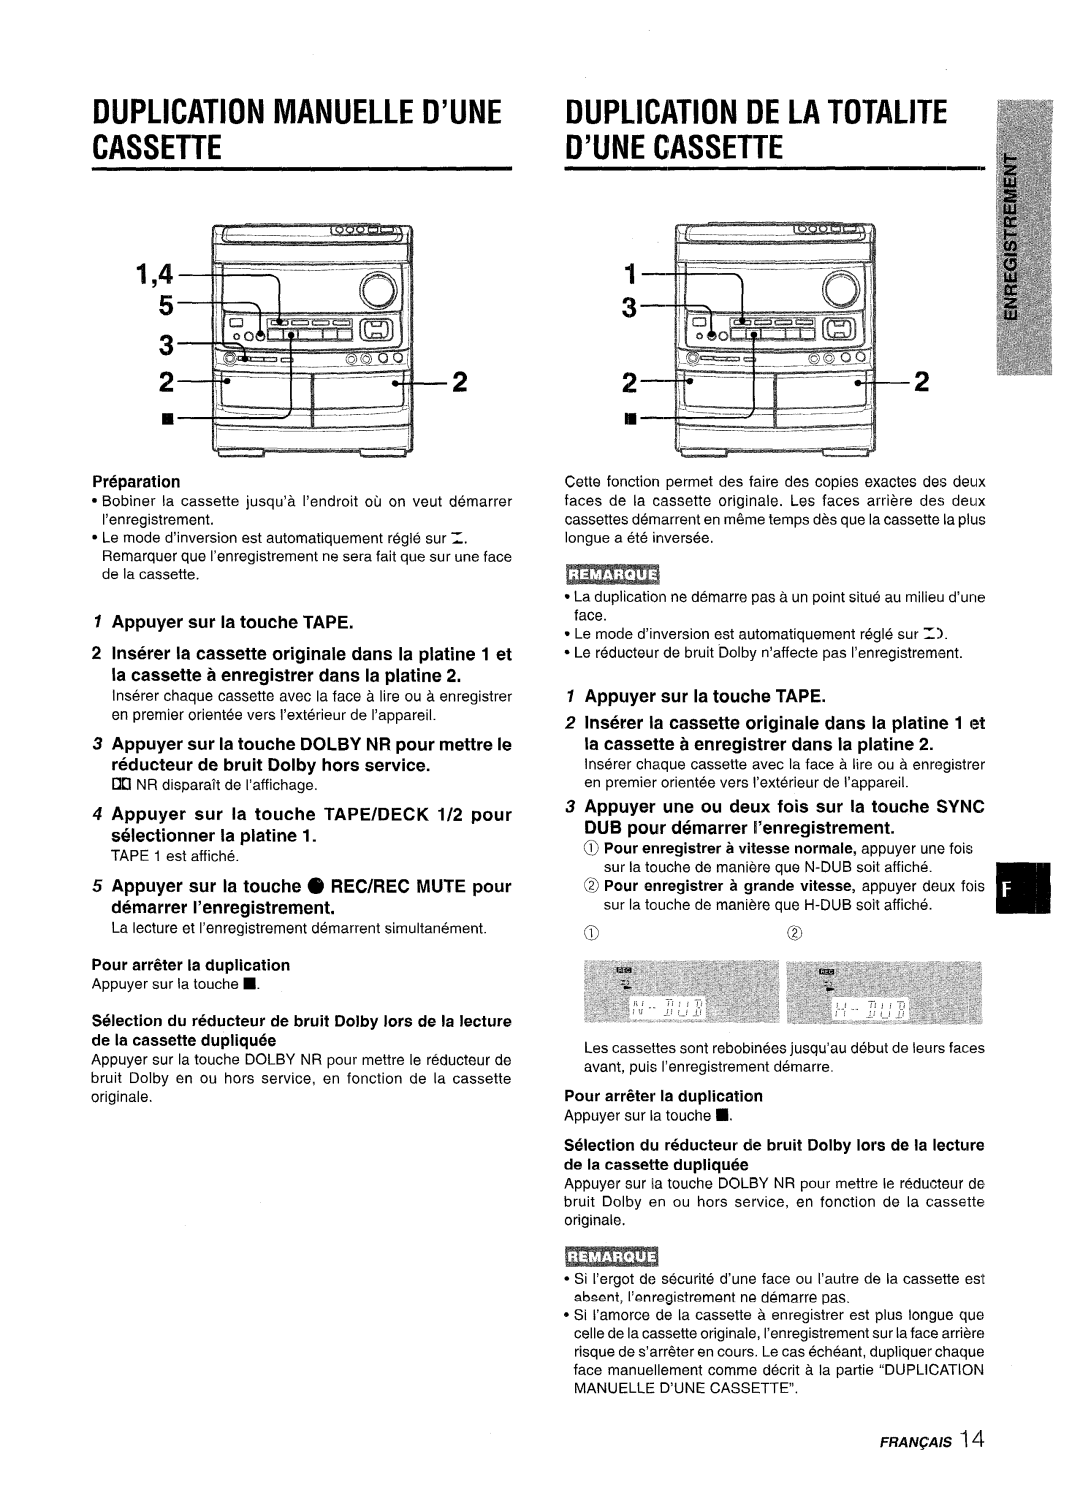 Aiwa NSX-V9000 Duplication Manuelle D’Une Cassette, Duplication De La Totalite D’Une Cassette, Appuyer sur la touche TAPE 